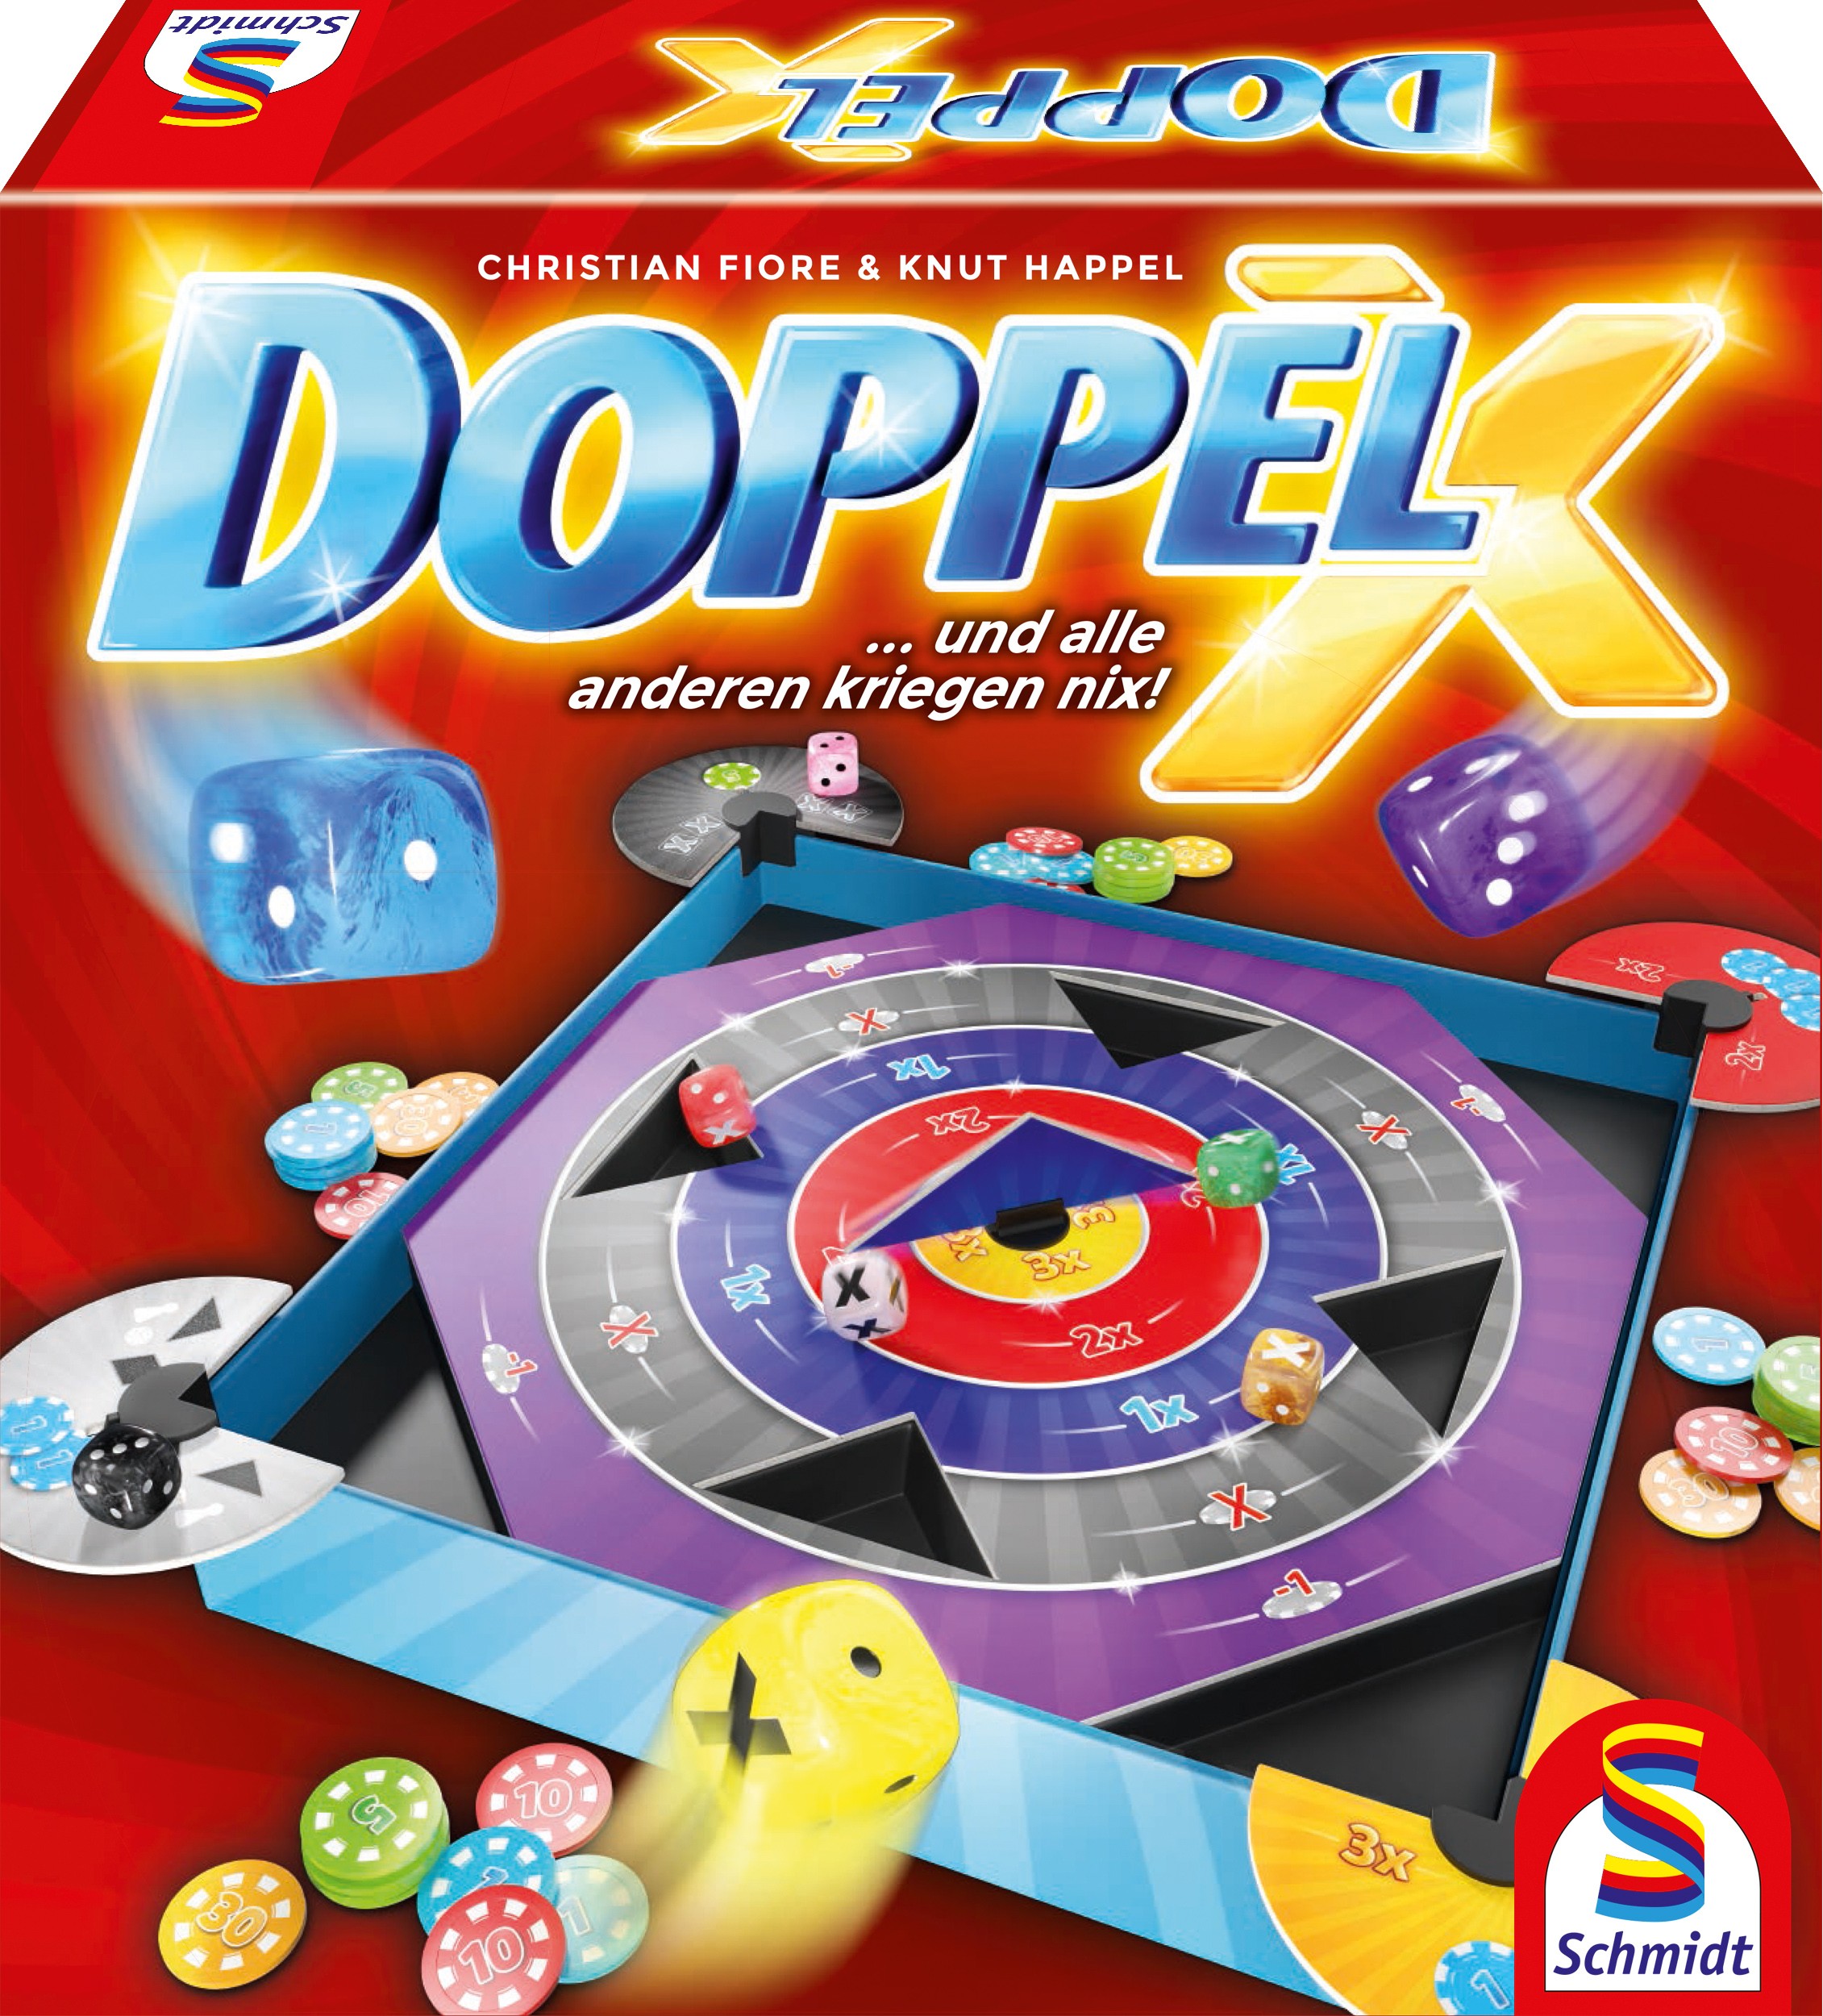 Doppel X Spielanleitung – PDF Download 0 (0)